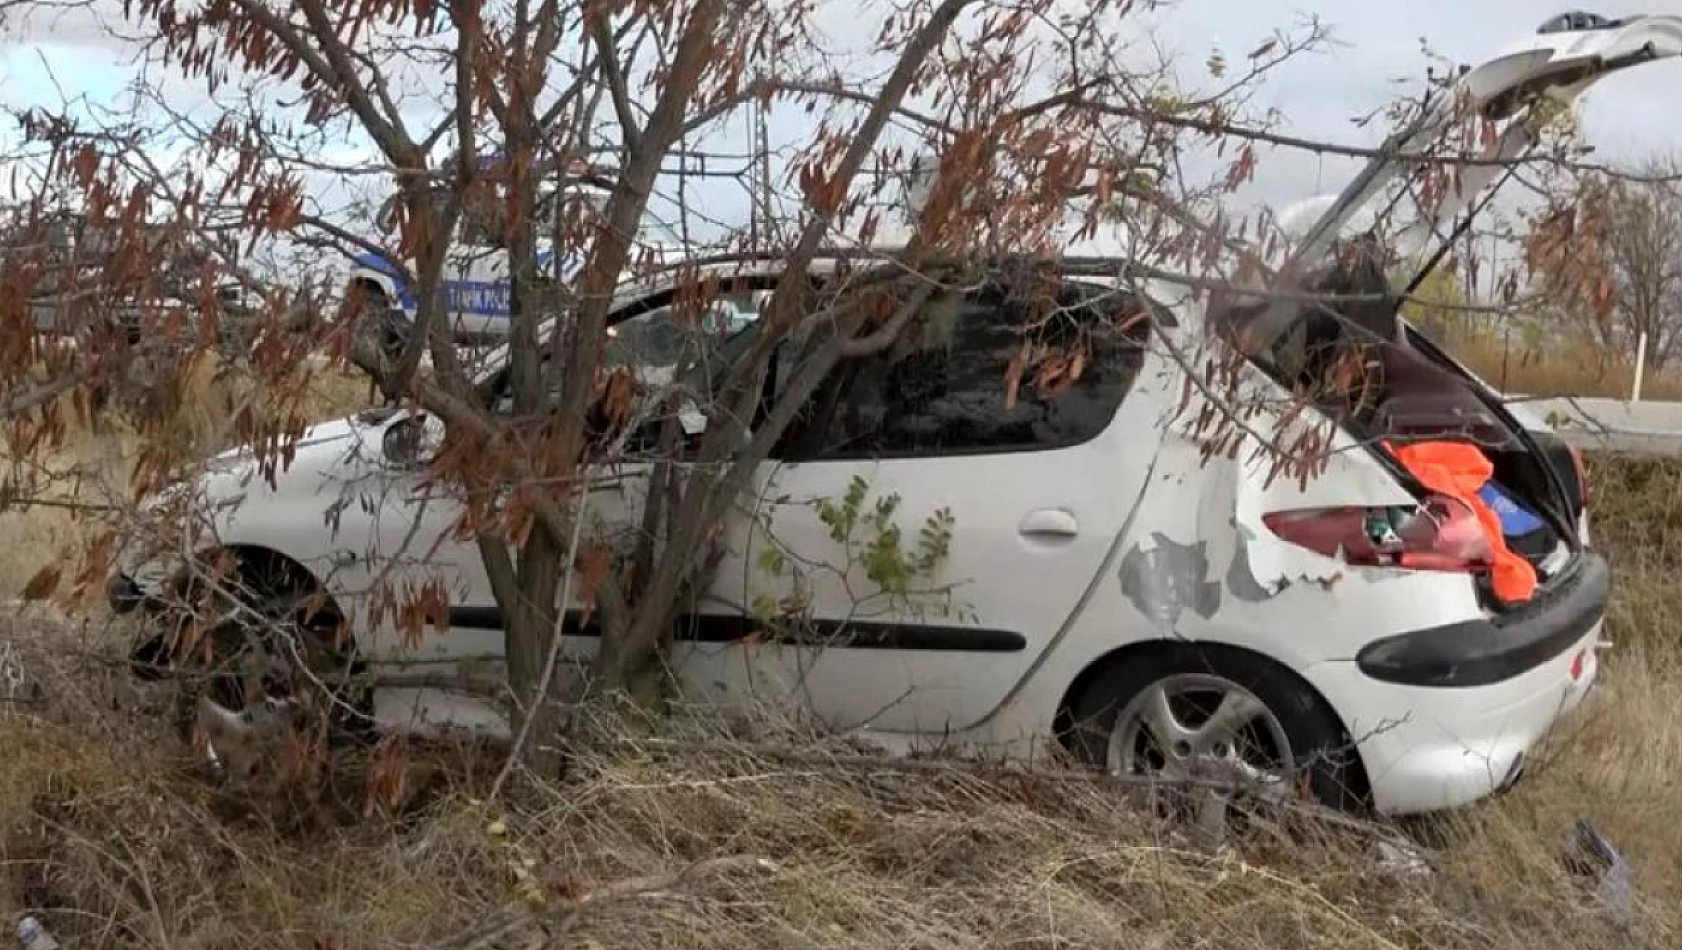 Aksaray-Konya Karayolunda direksiyon hakimiyetini kaybeden otomobil şarampole uçtu! Baba ve oğul yaralandı!